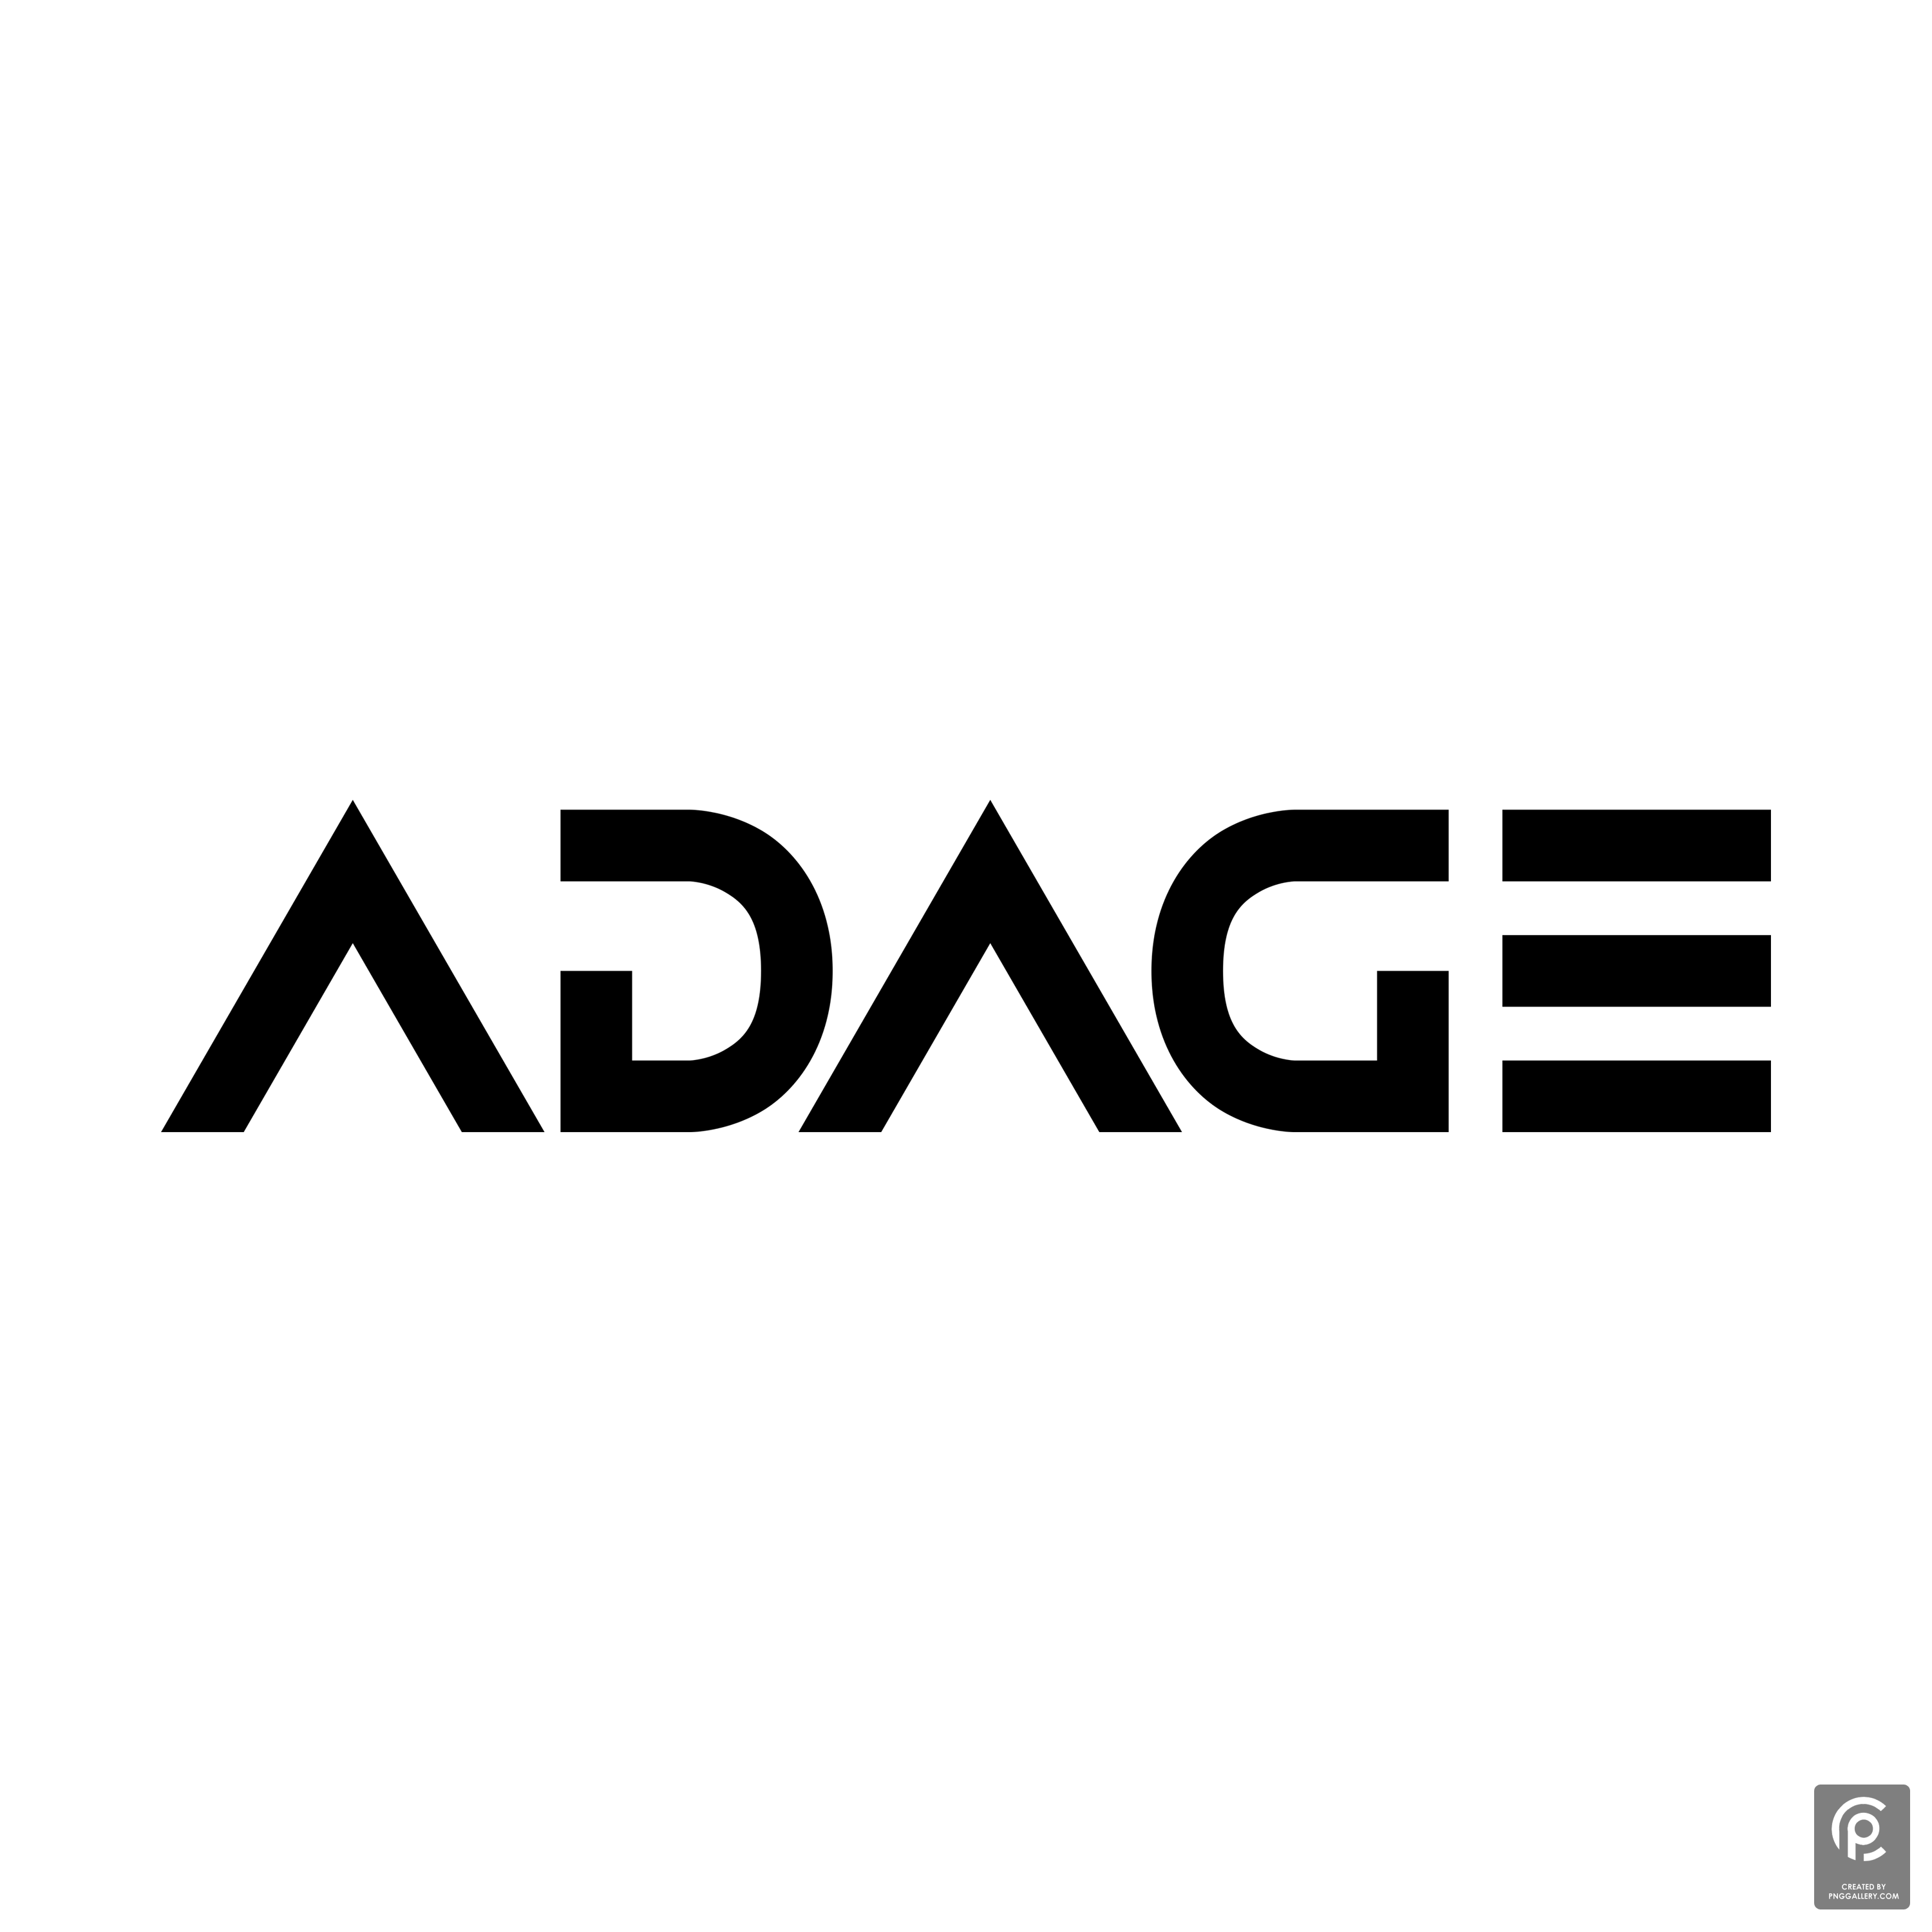 Adage Inc Logo Transparent Photo